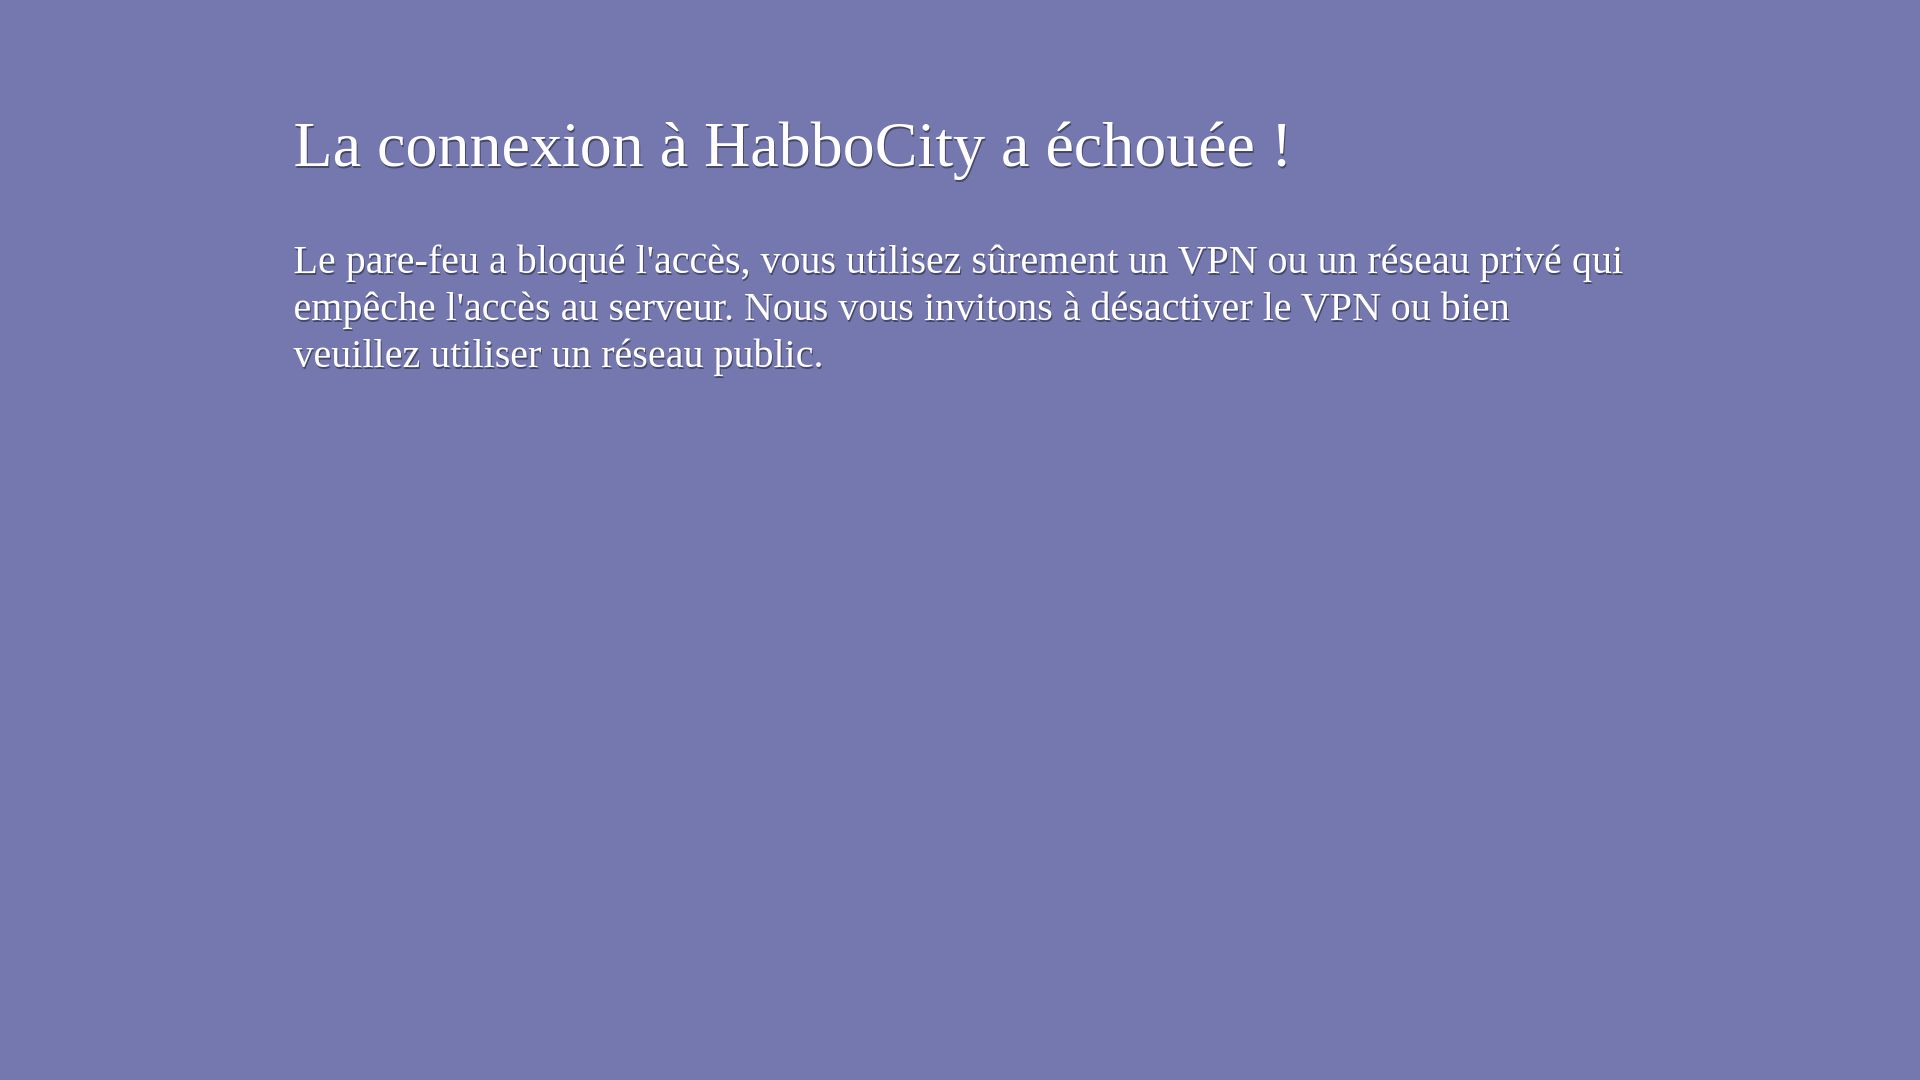 网站状态 habbocity.me 是  在线的